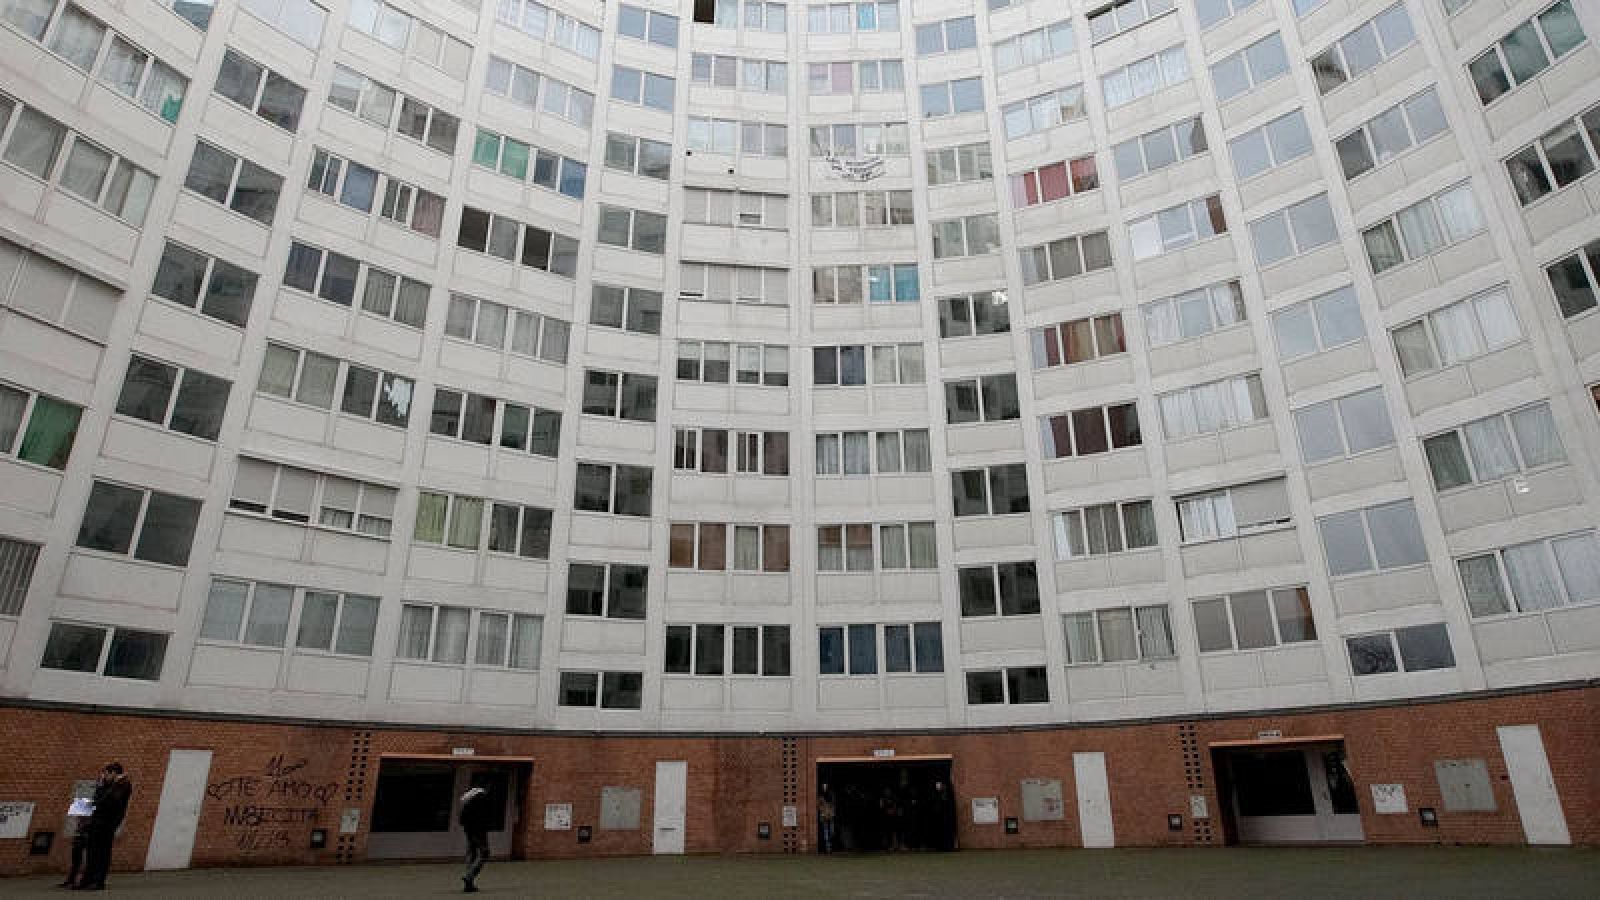 Patio de un edificio de protección social en Madrid